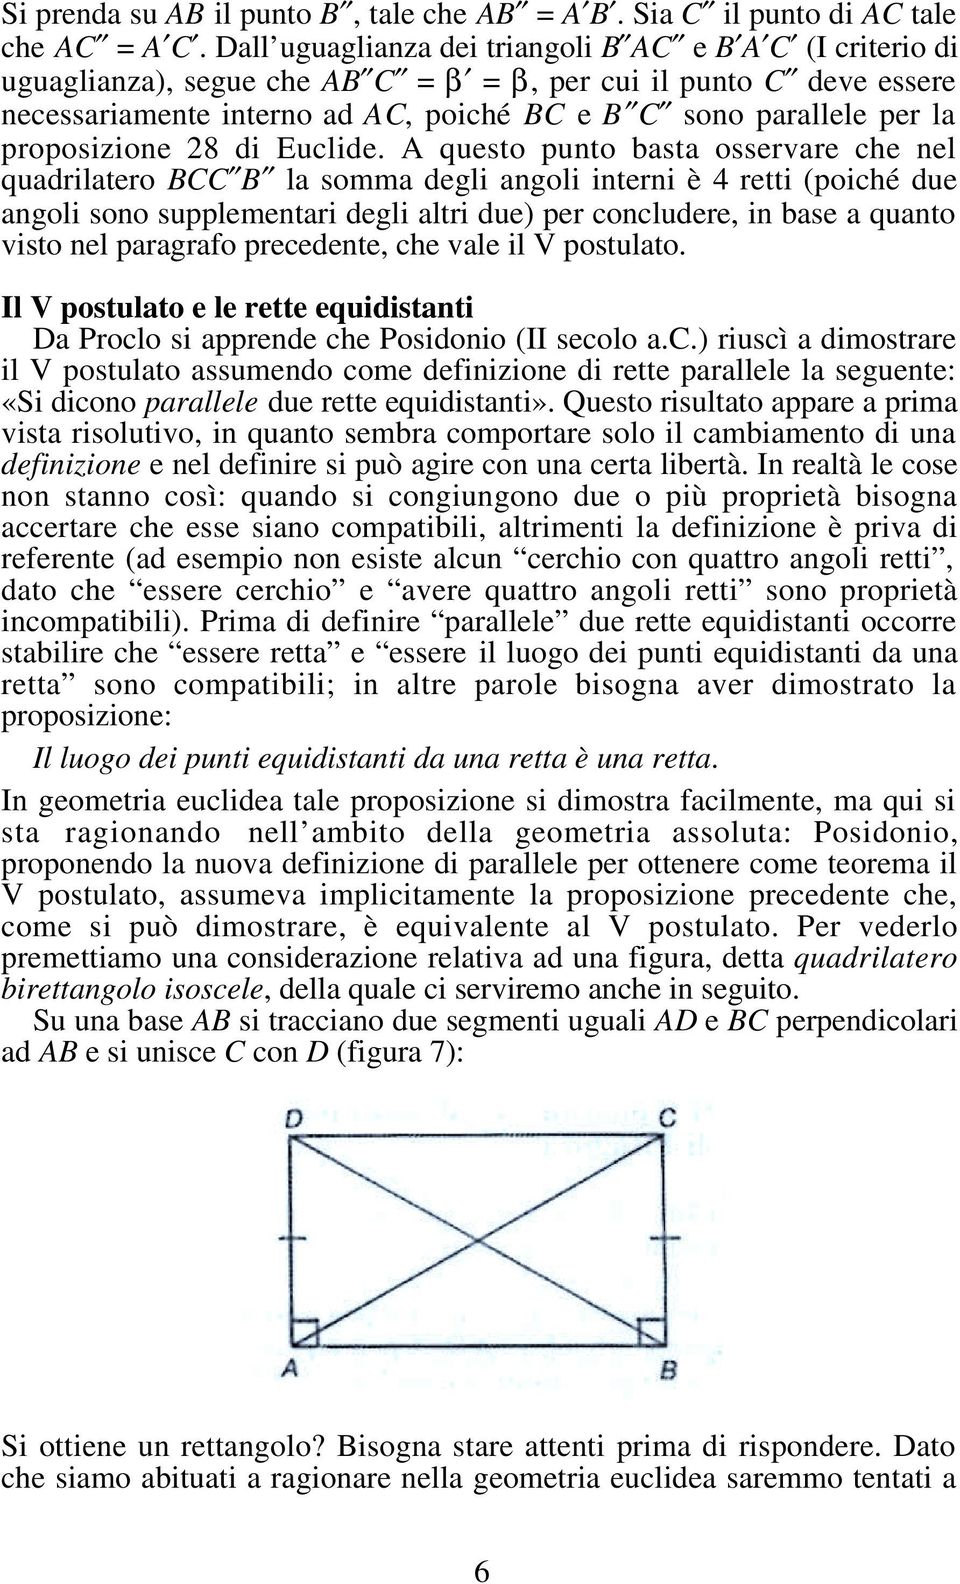 proposizione 28 di Euclide.